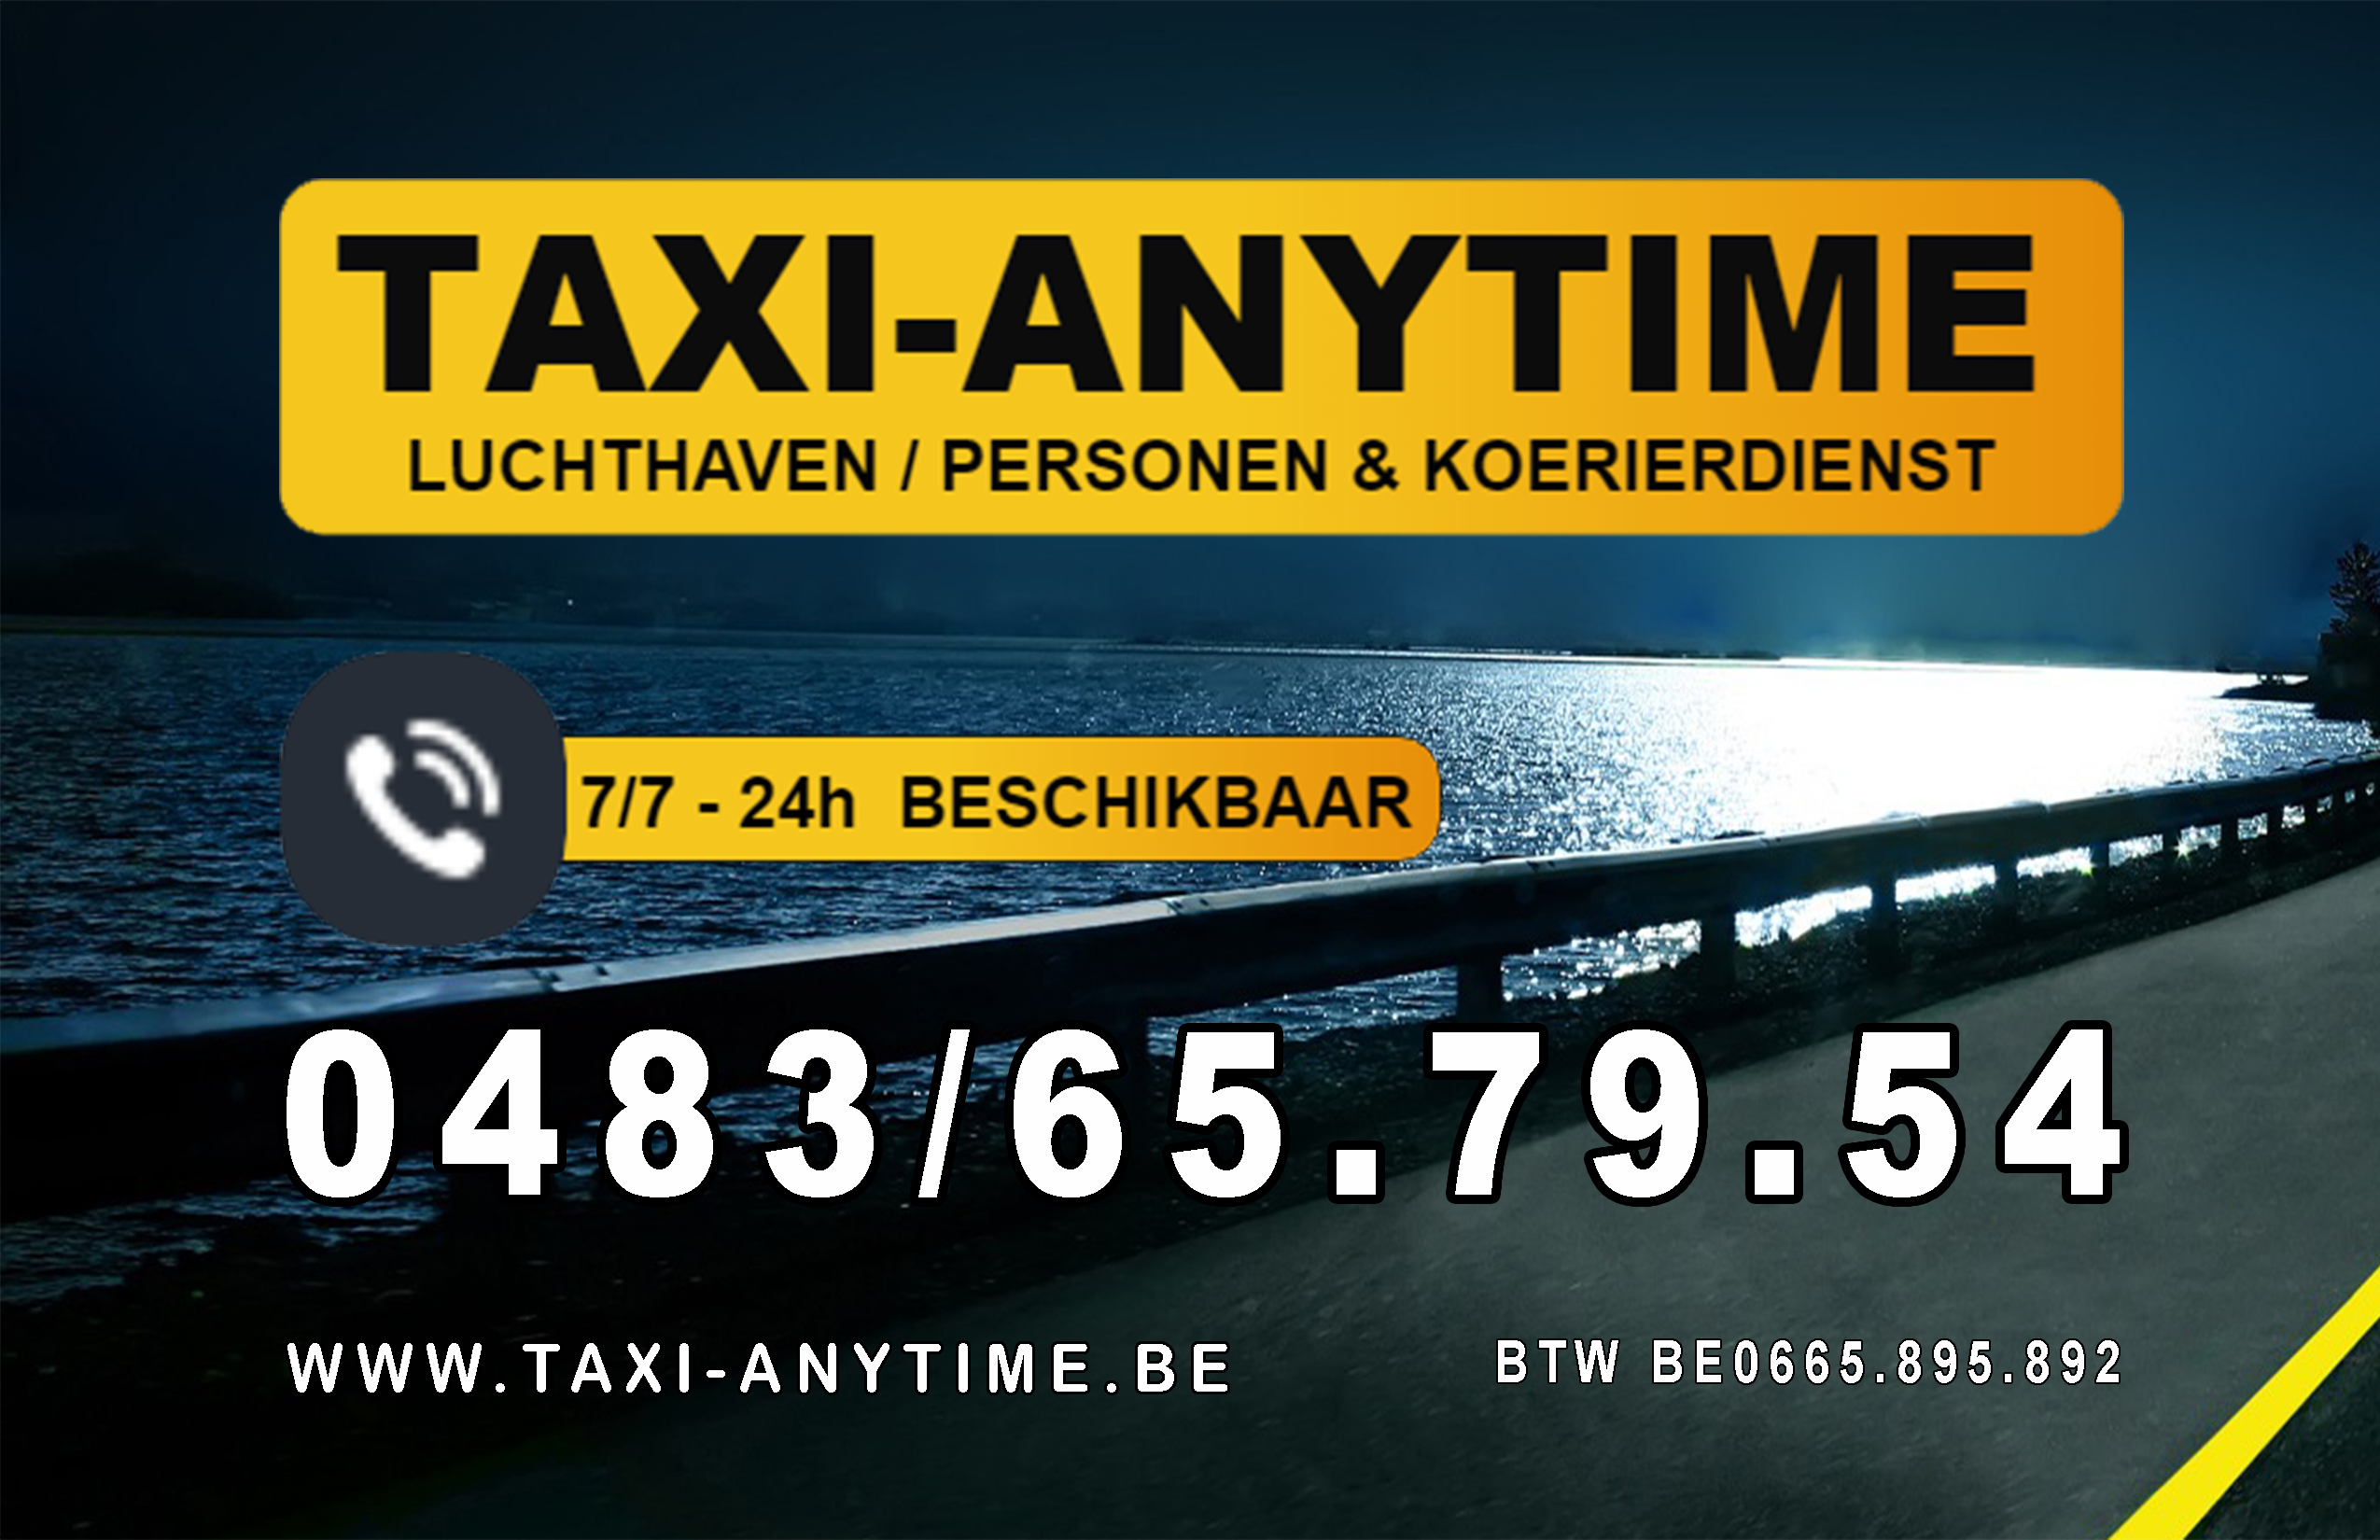 taxibedrijven met luchthavenvervoer Londerzeel Taxi-anytime